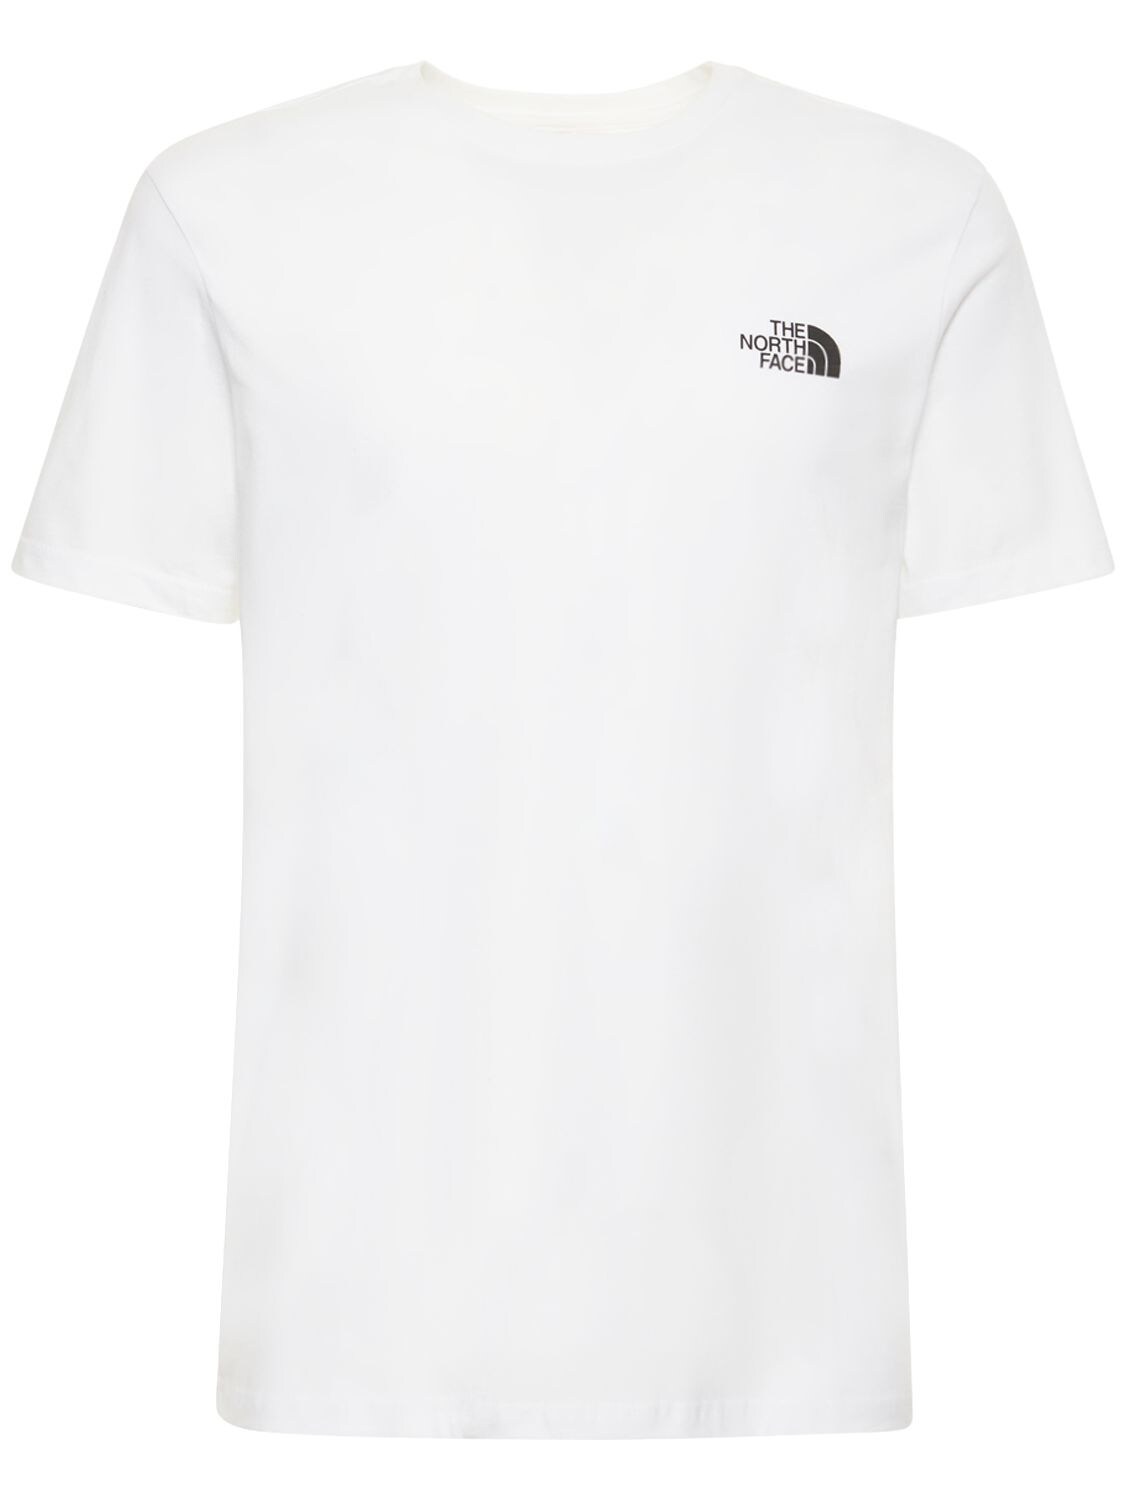 The North Face Dome Logo T恤 In Tnf White